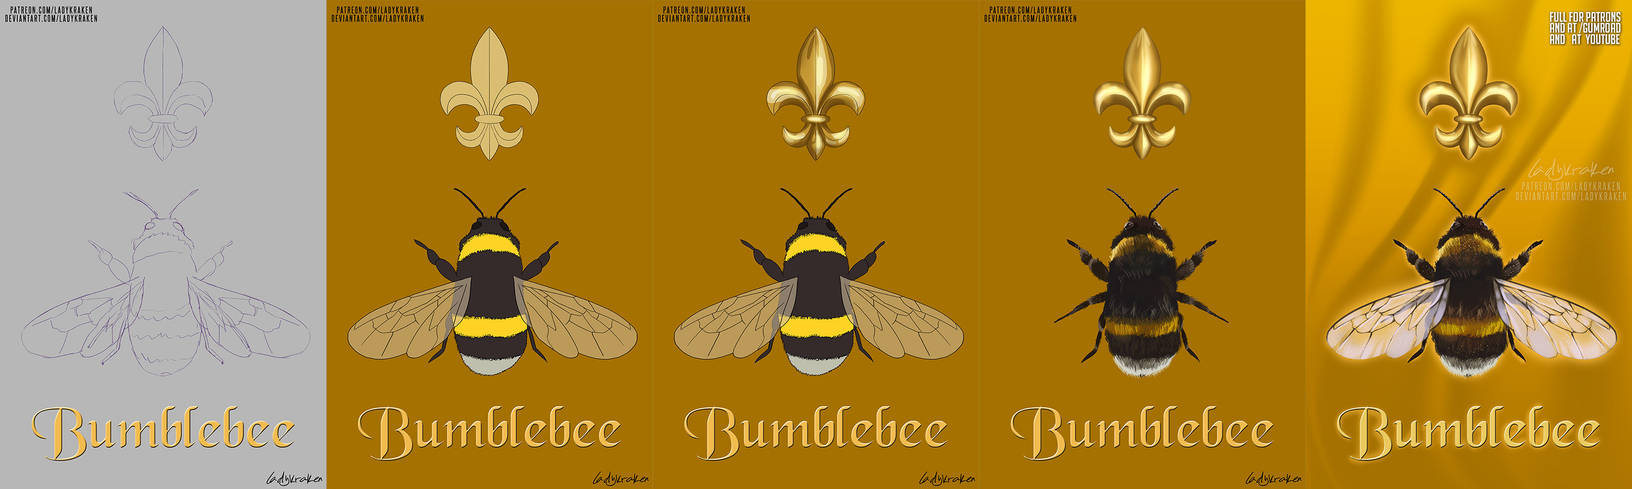 Bumblebee Scouts -Steps Digital Painting Tutorial